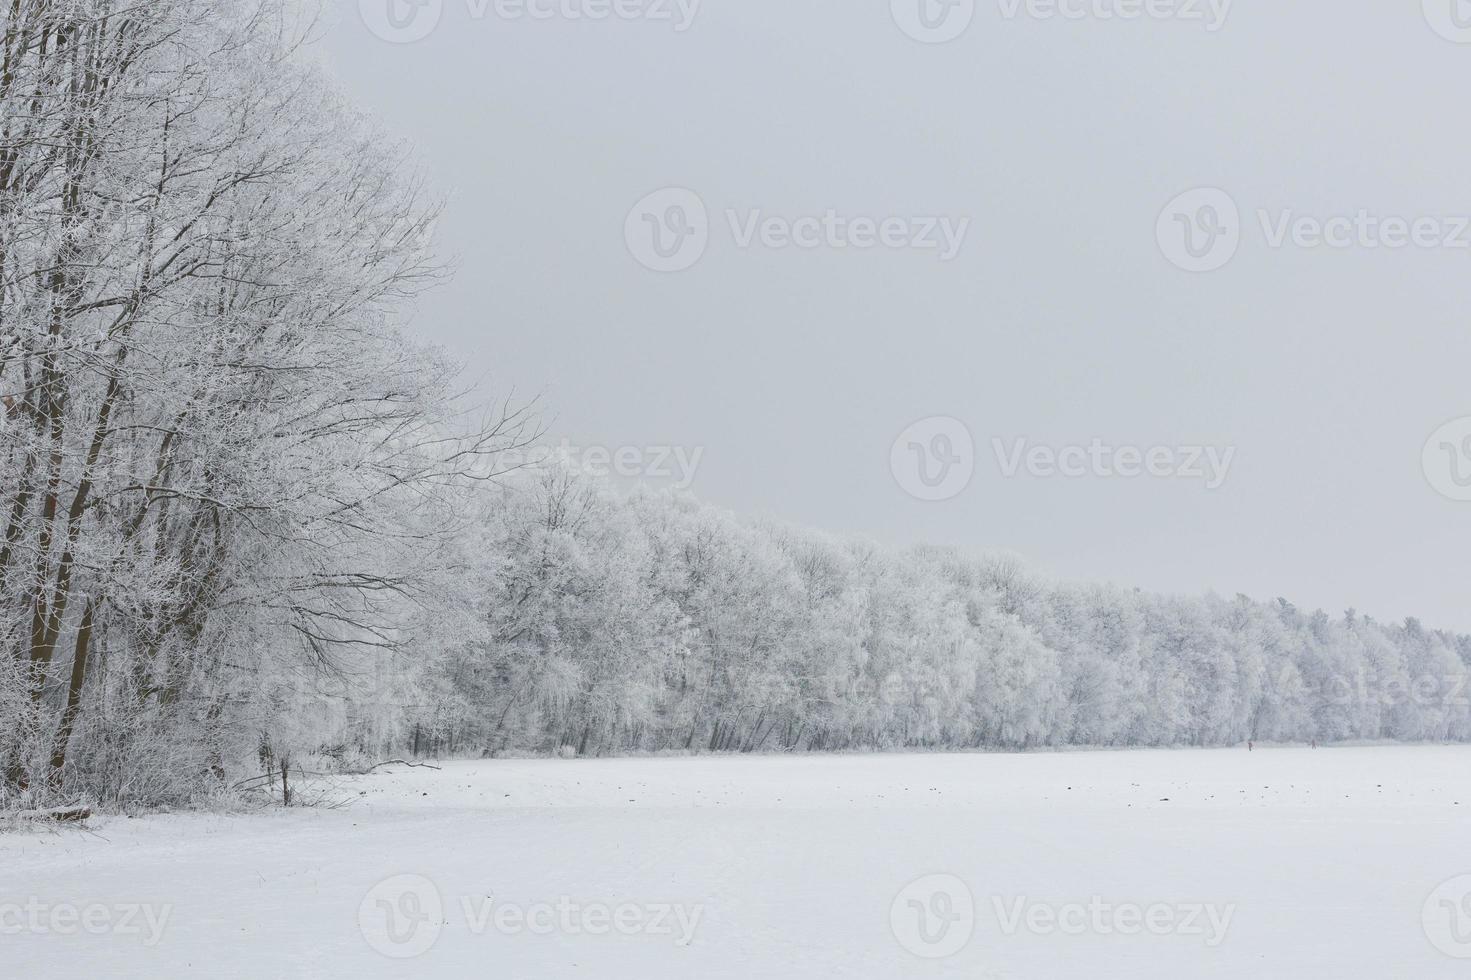 paisagem de inverno com neve e nevoeiro foto